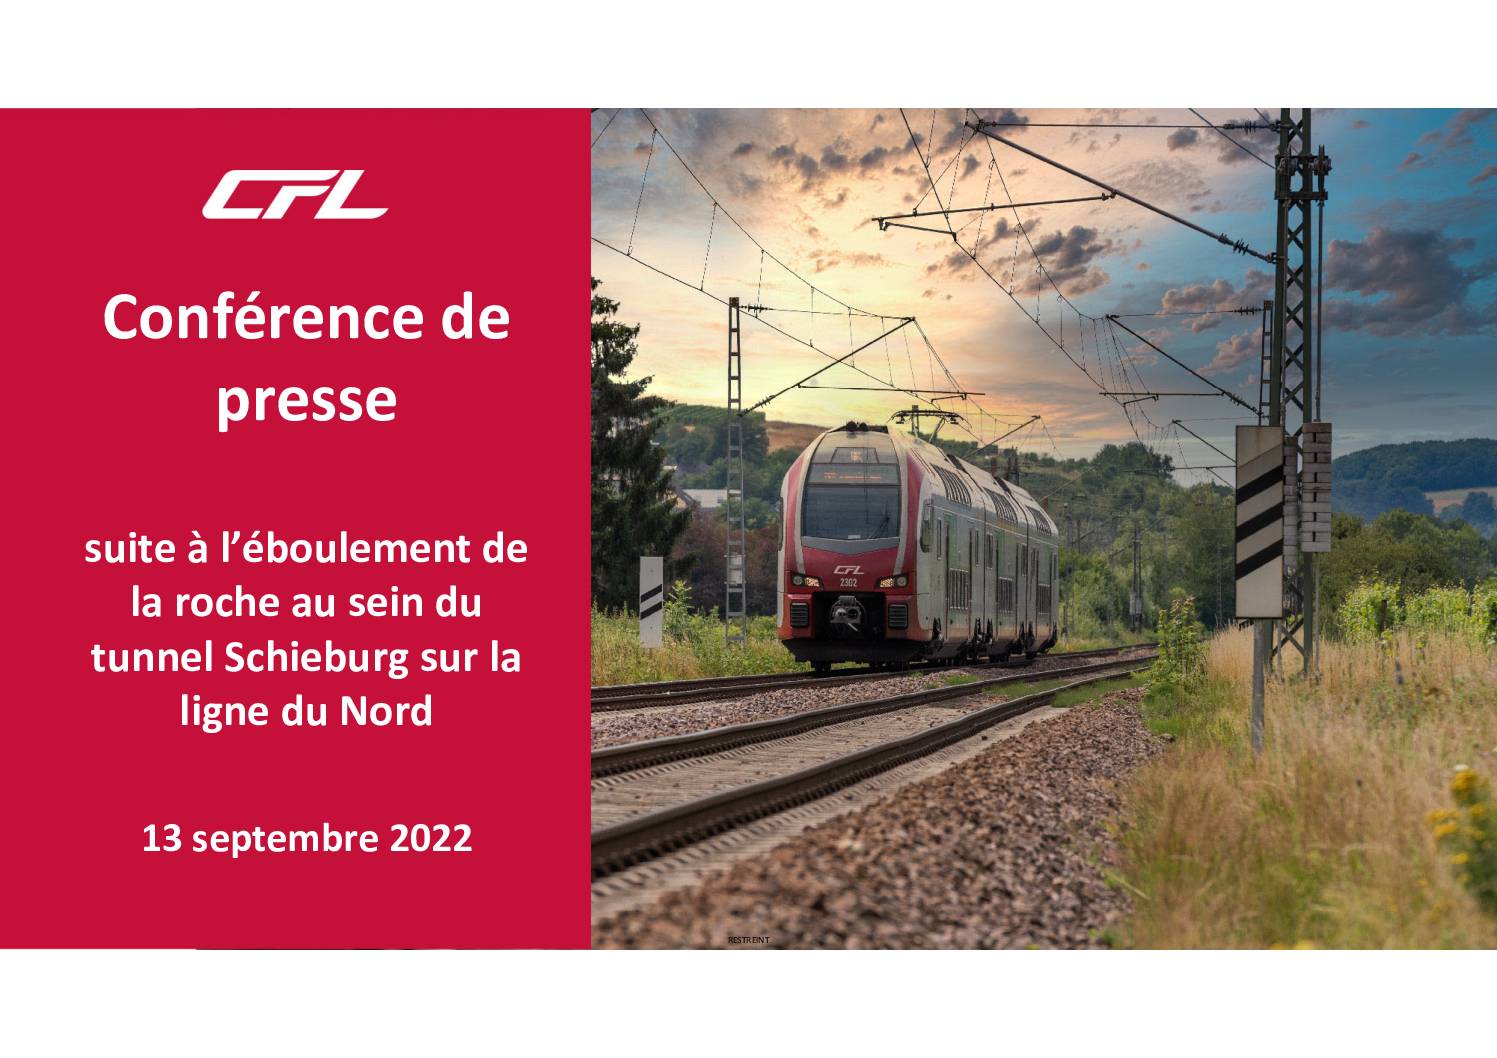 CFL ligne 10: Transports alternatifs pendant la fermeture de la ligne 10 entre Kautenbach et Clervaux